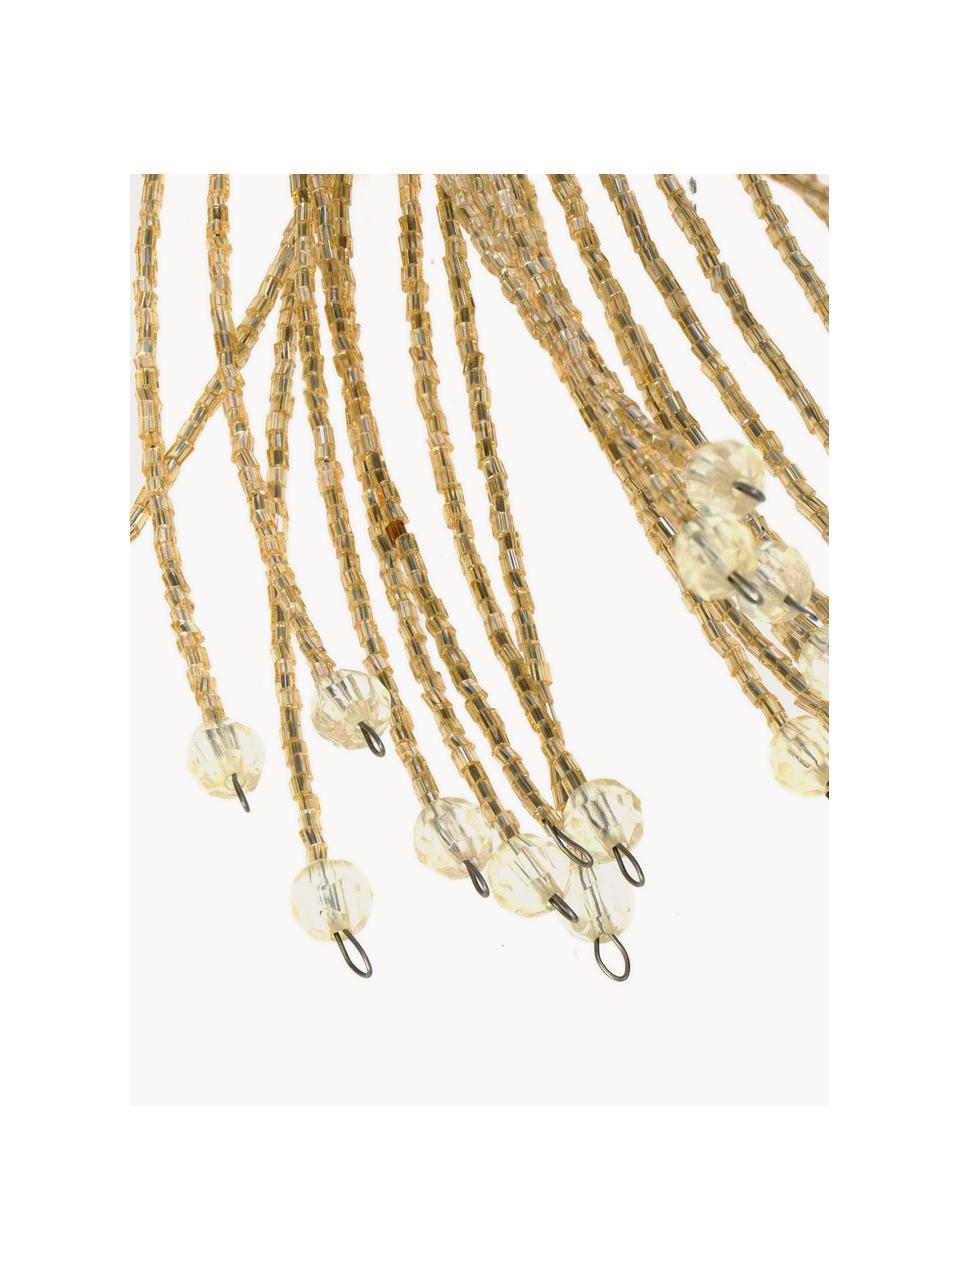 Dekoracja Beads, 2 szt., Szkło, metal powlekany, Odcienie szampańskiego, Ø 40 x W 58 cm